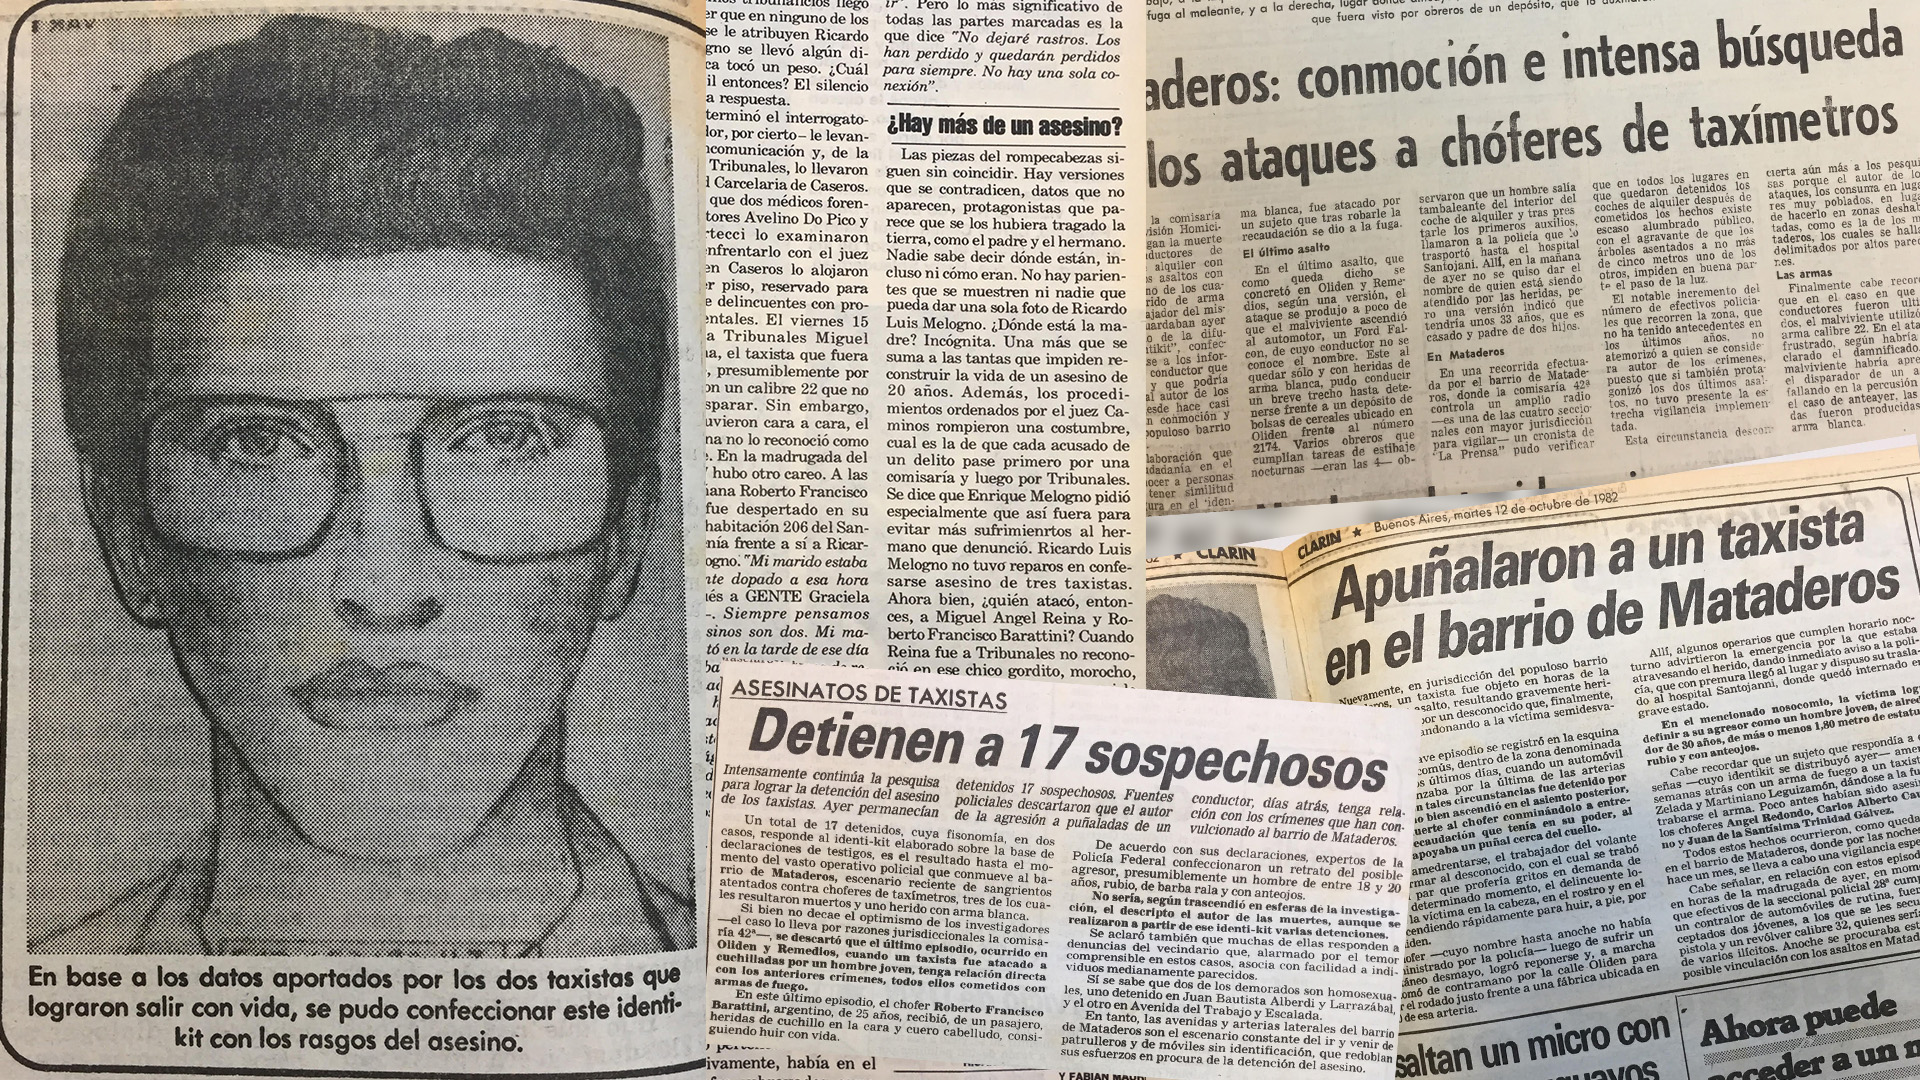 En 1982, Ricardo Luis Melogno, un asesino serial de taxistas, aterrorizó al barrio de Mataderos